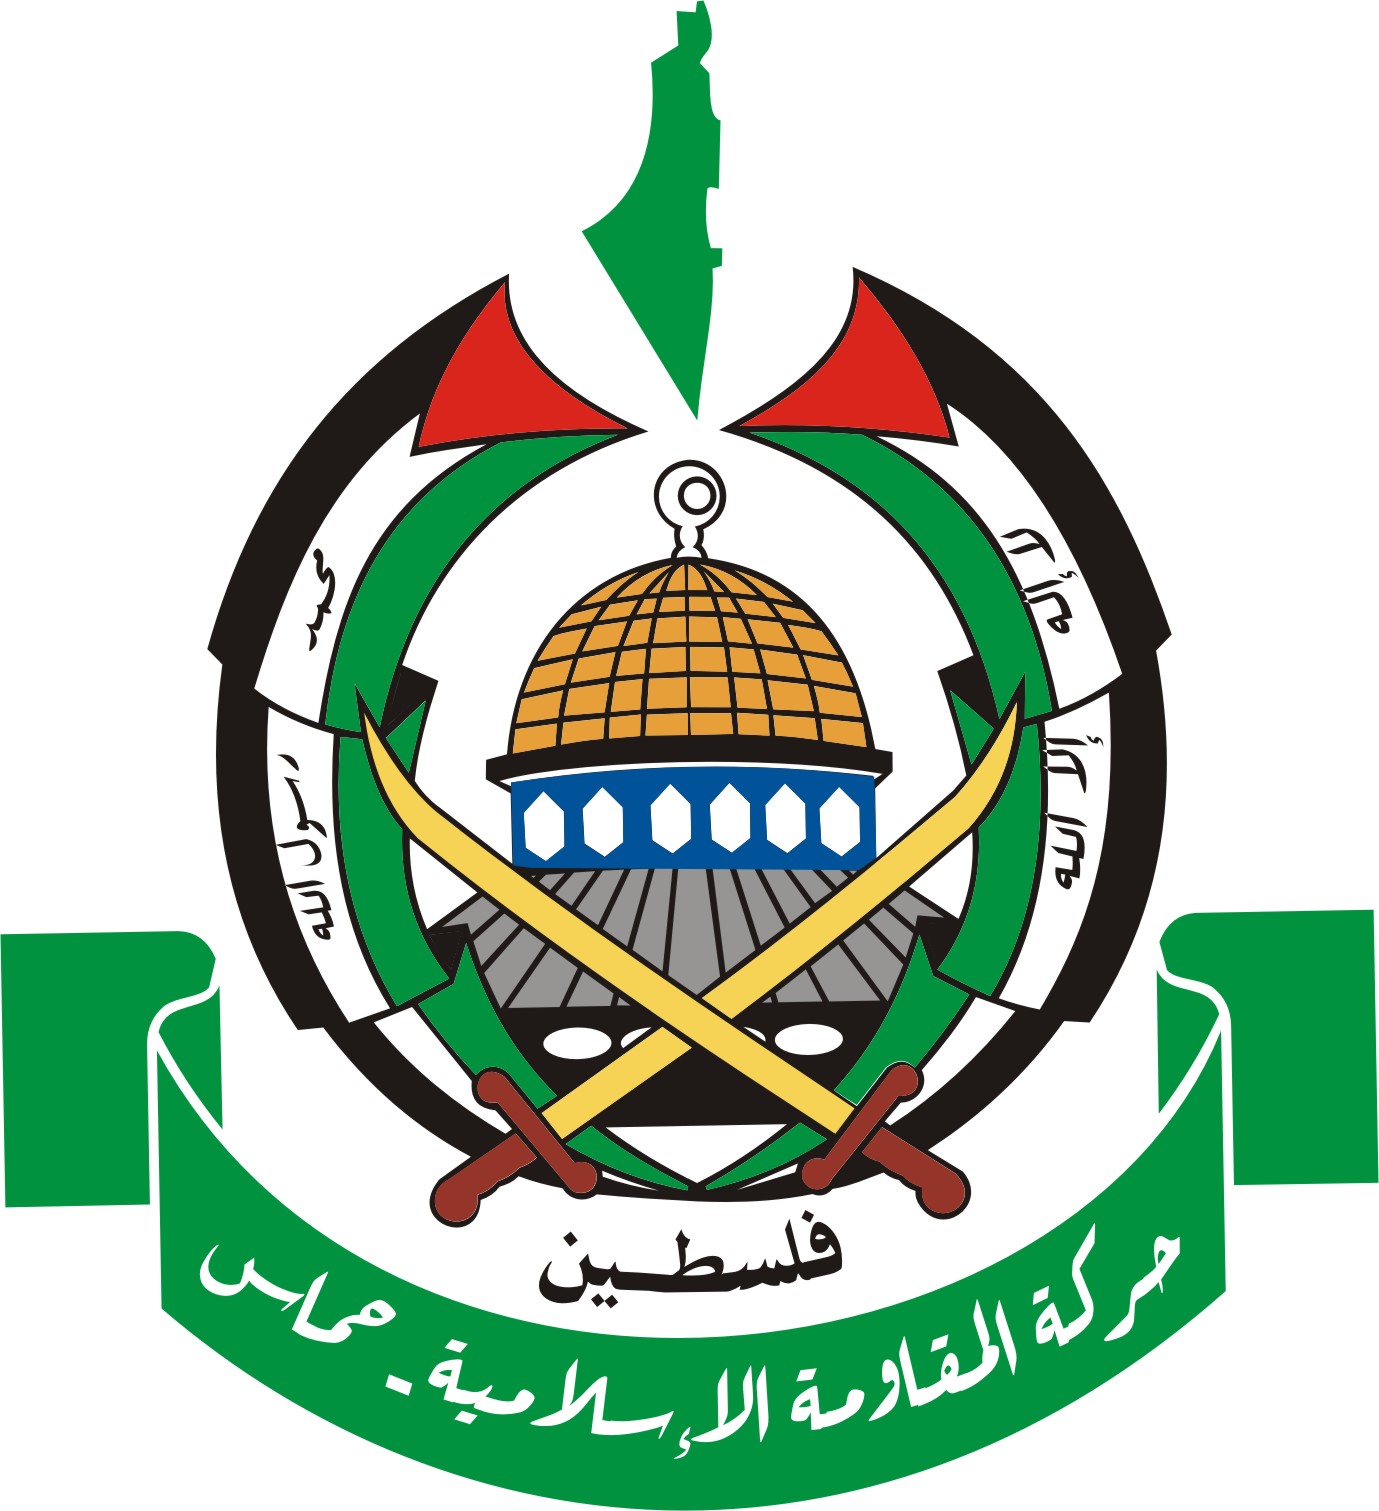 وفد حماس بالقاهرة الأسبوع المقبل لتحقيق المصالحة